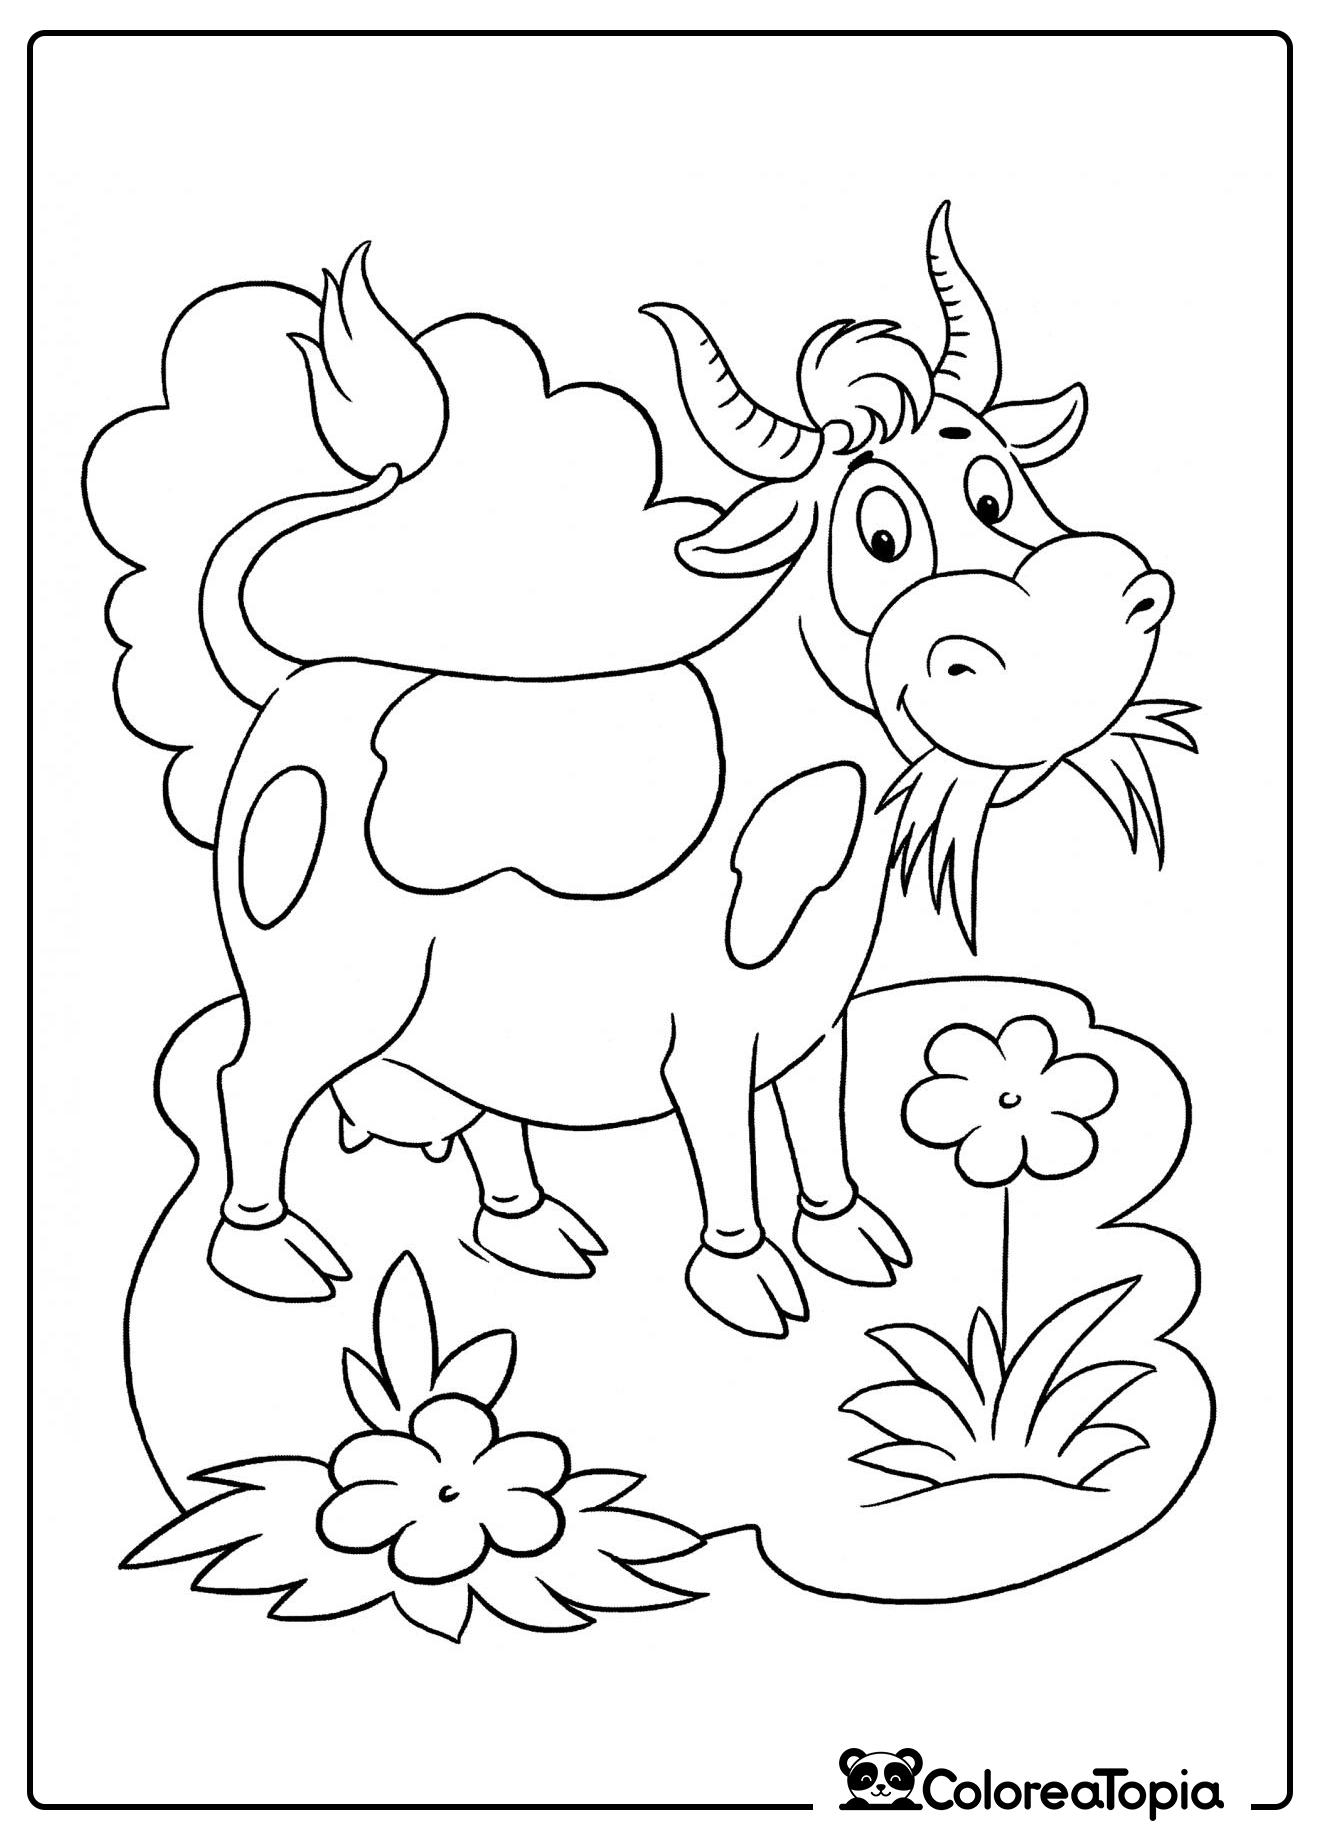 La vaca pasta en el prado - dibujo para colorear